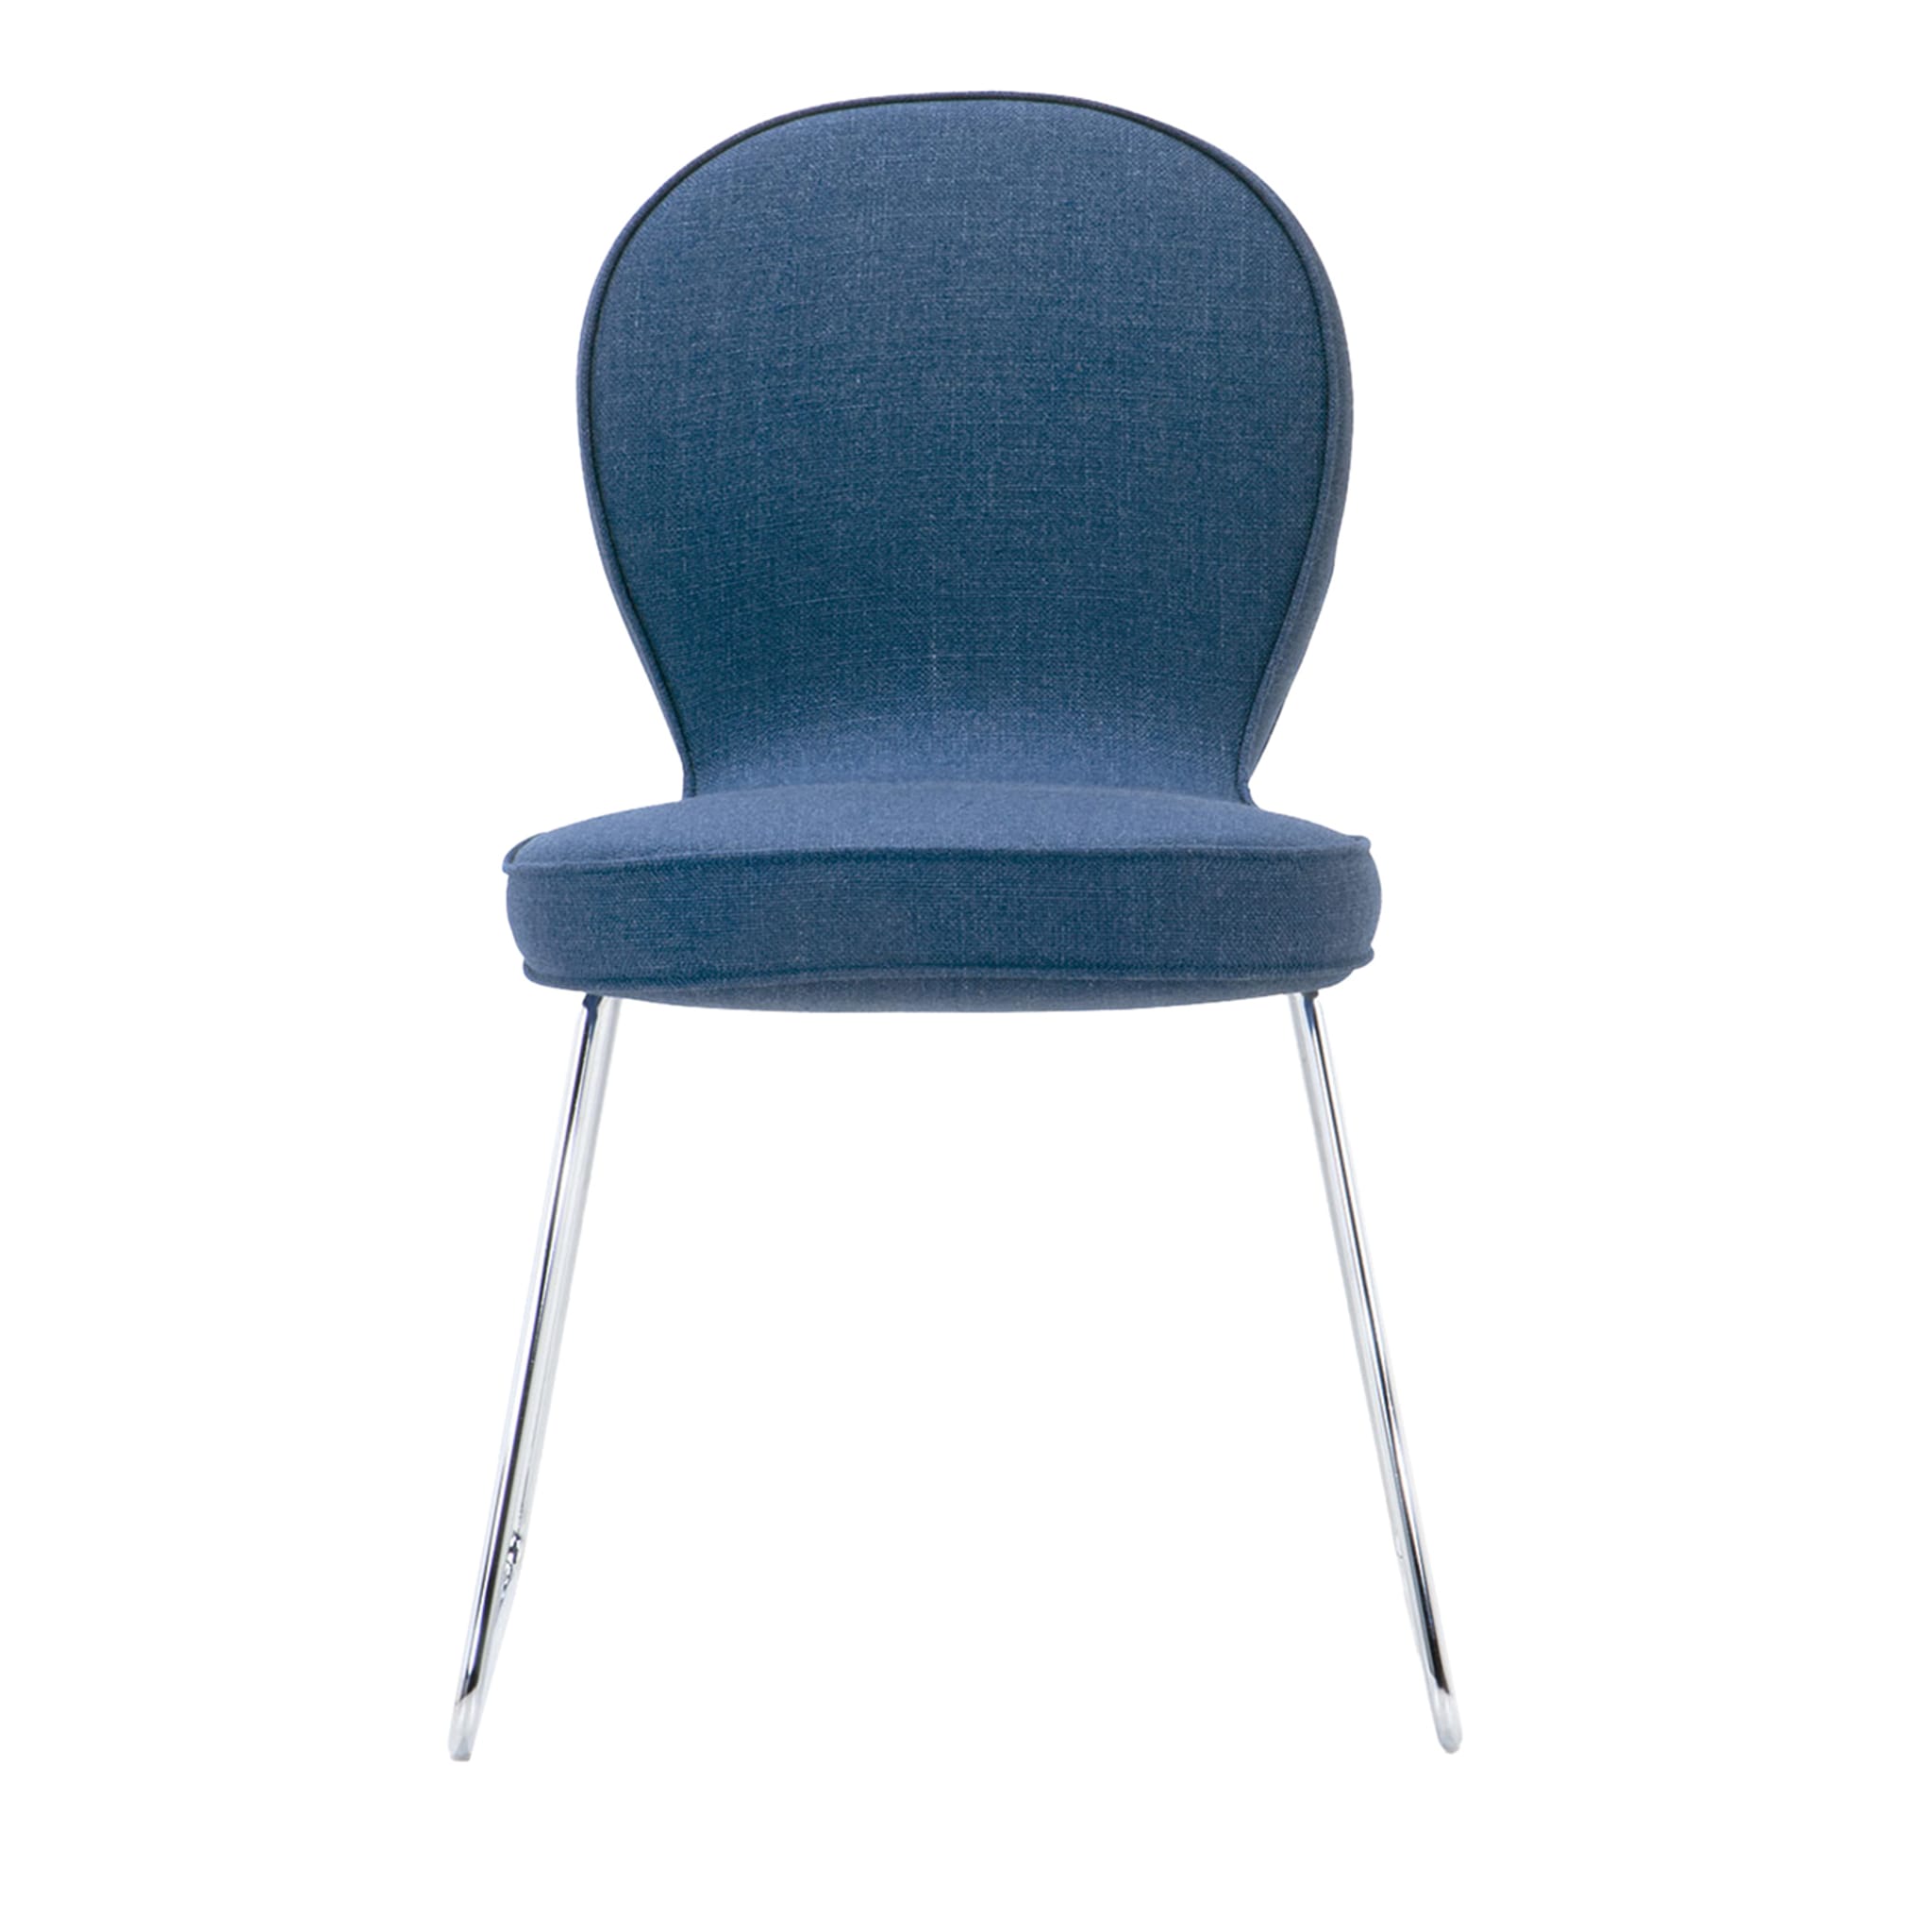 B4 Blue Chair by Simone Micheli - Main view